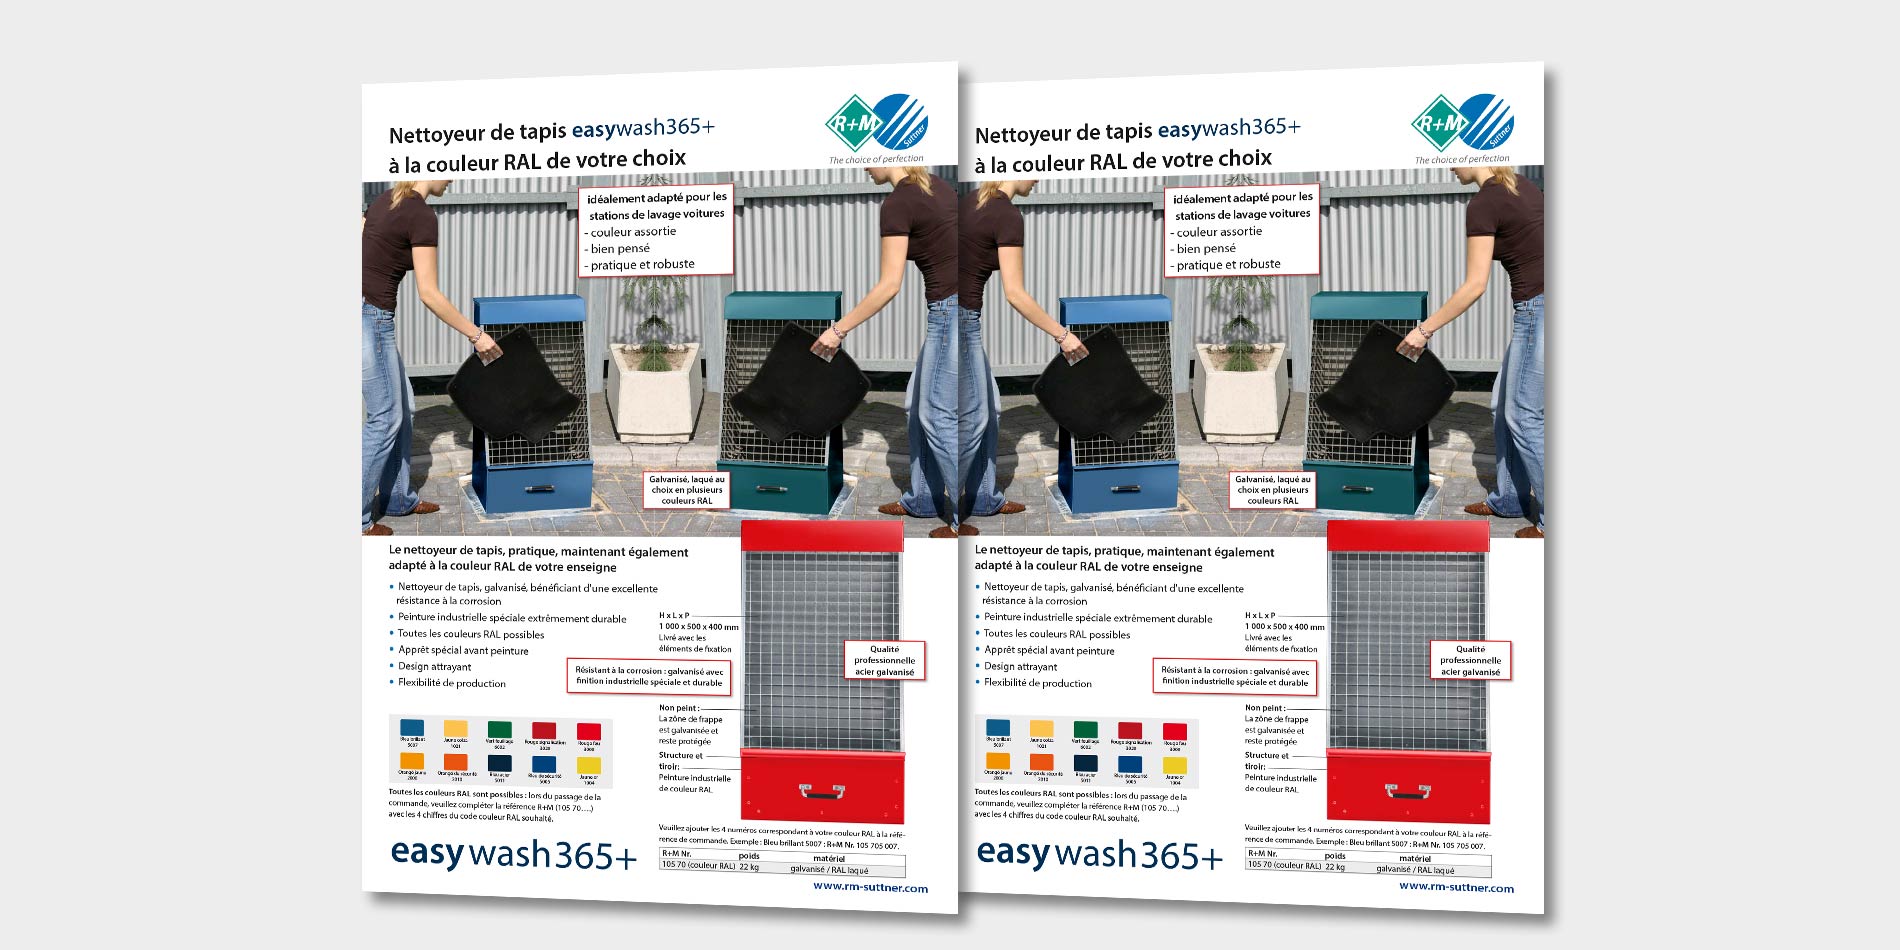 Nettoyeur de tapis easywash365+ dans la couleur RAL de votre choix.